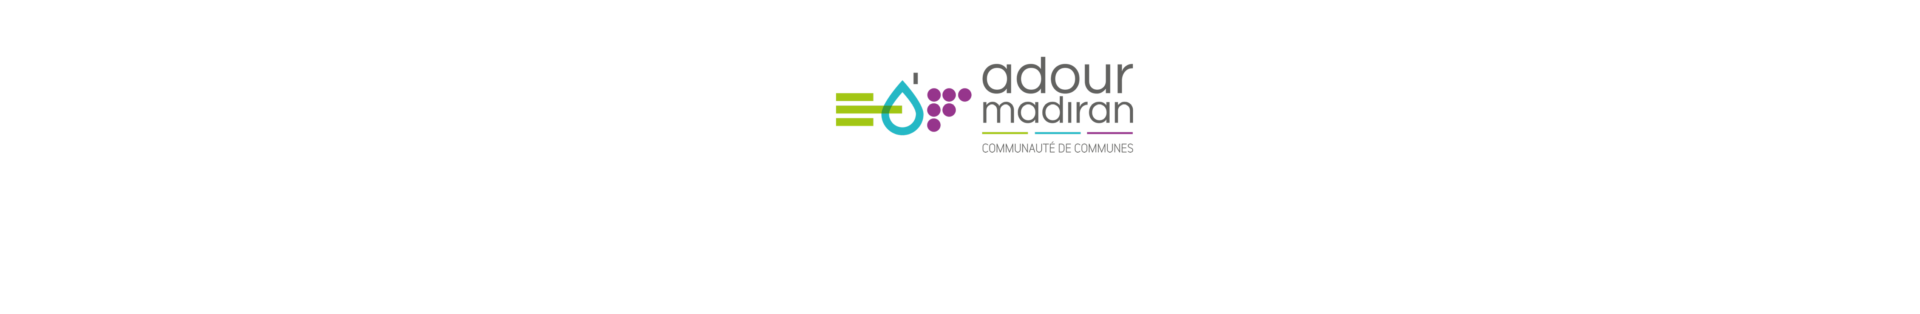 ADOUR MADIRAN | Communauté de communes